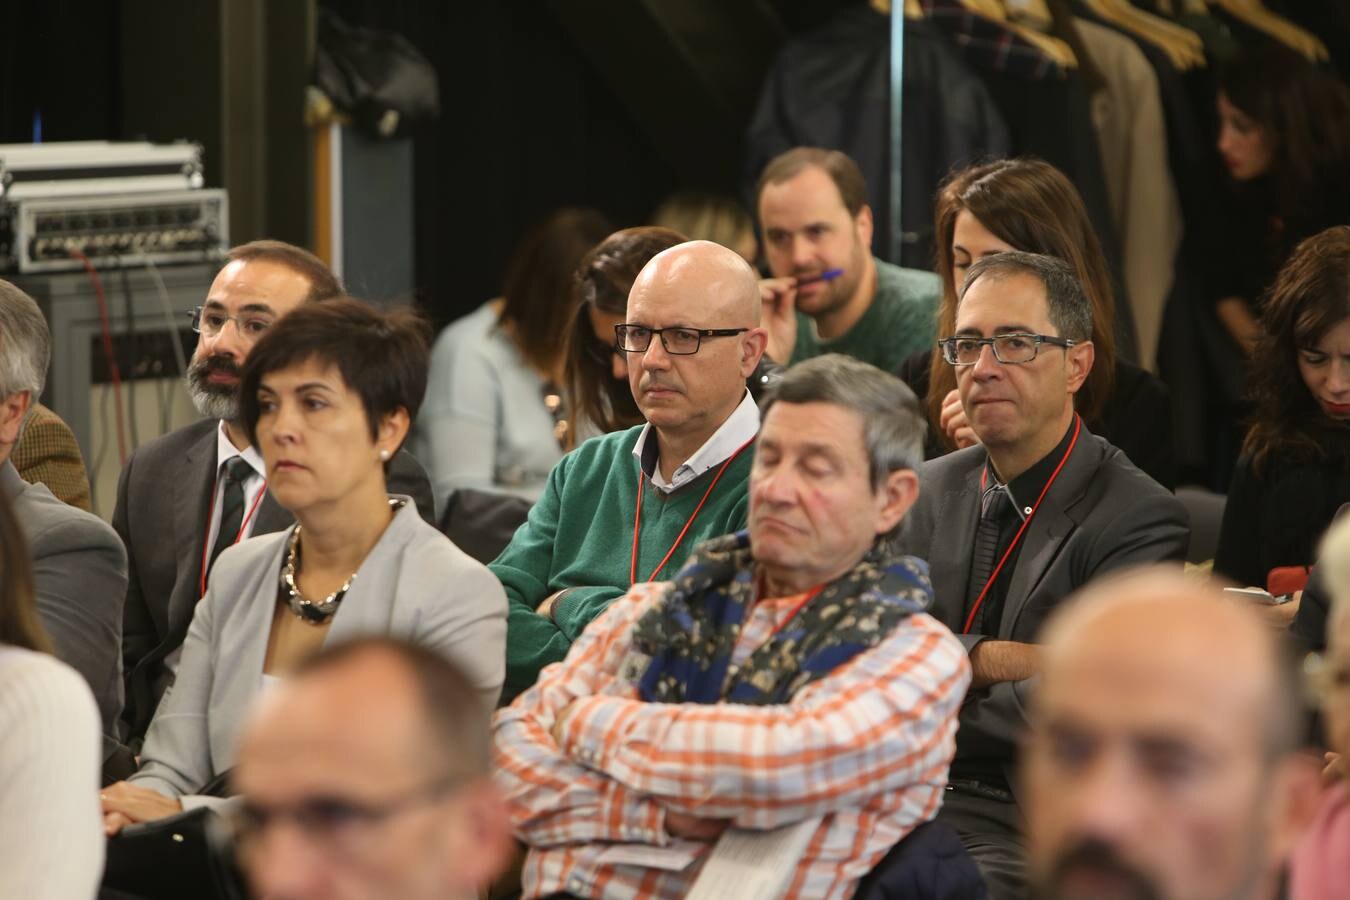 La Fombera acoge una jornada para recopilar los avances de la Agenda Digital que impulsa el Gobierno de La Rioja.